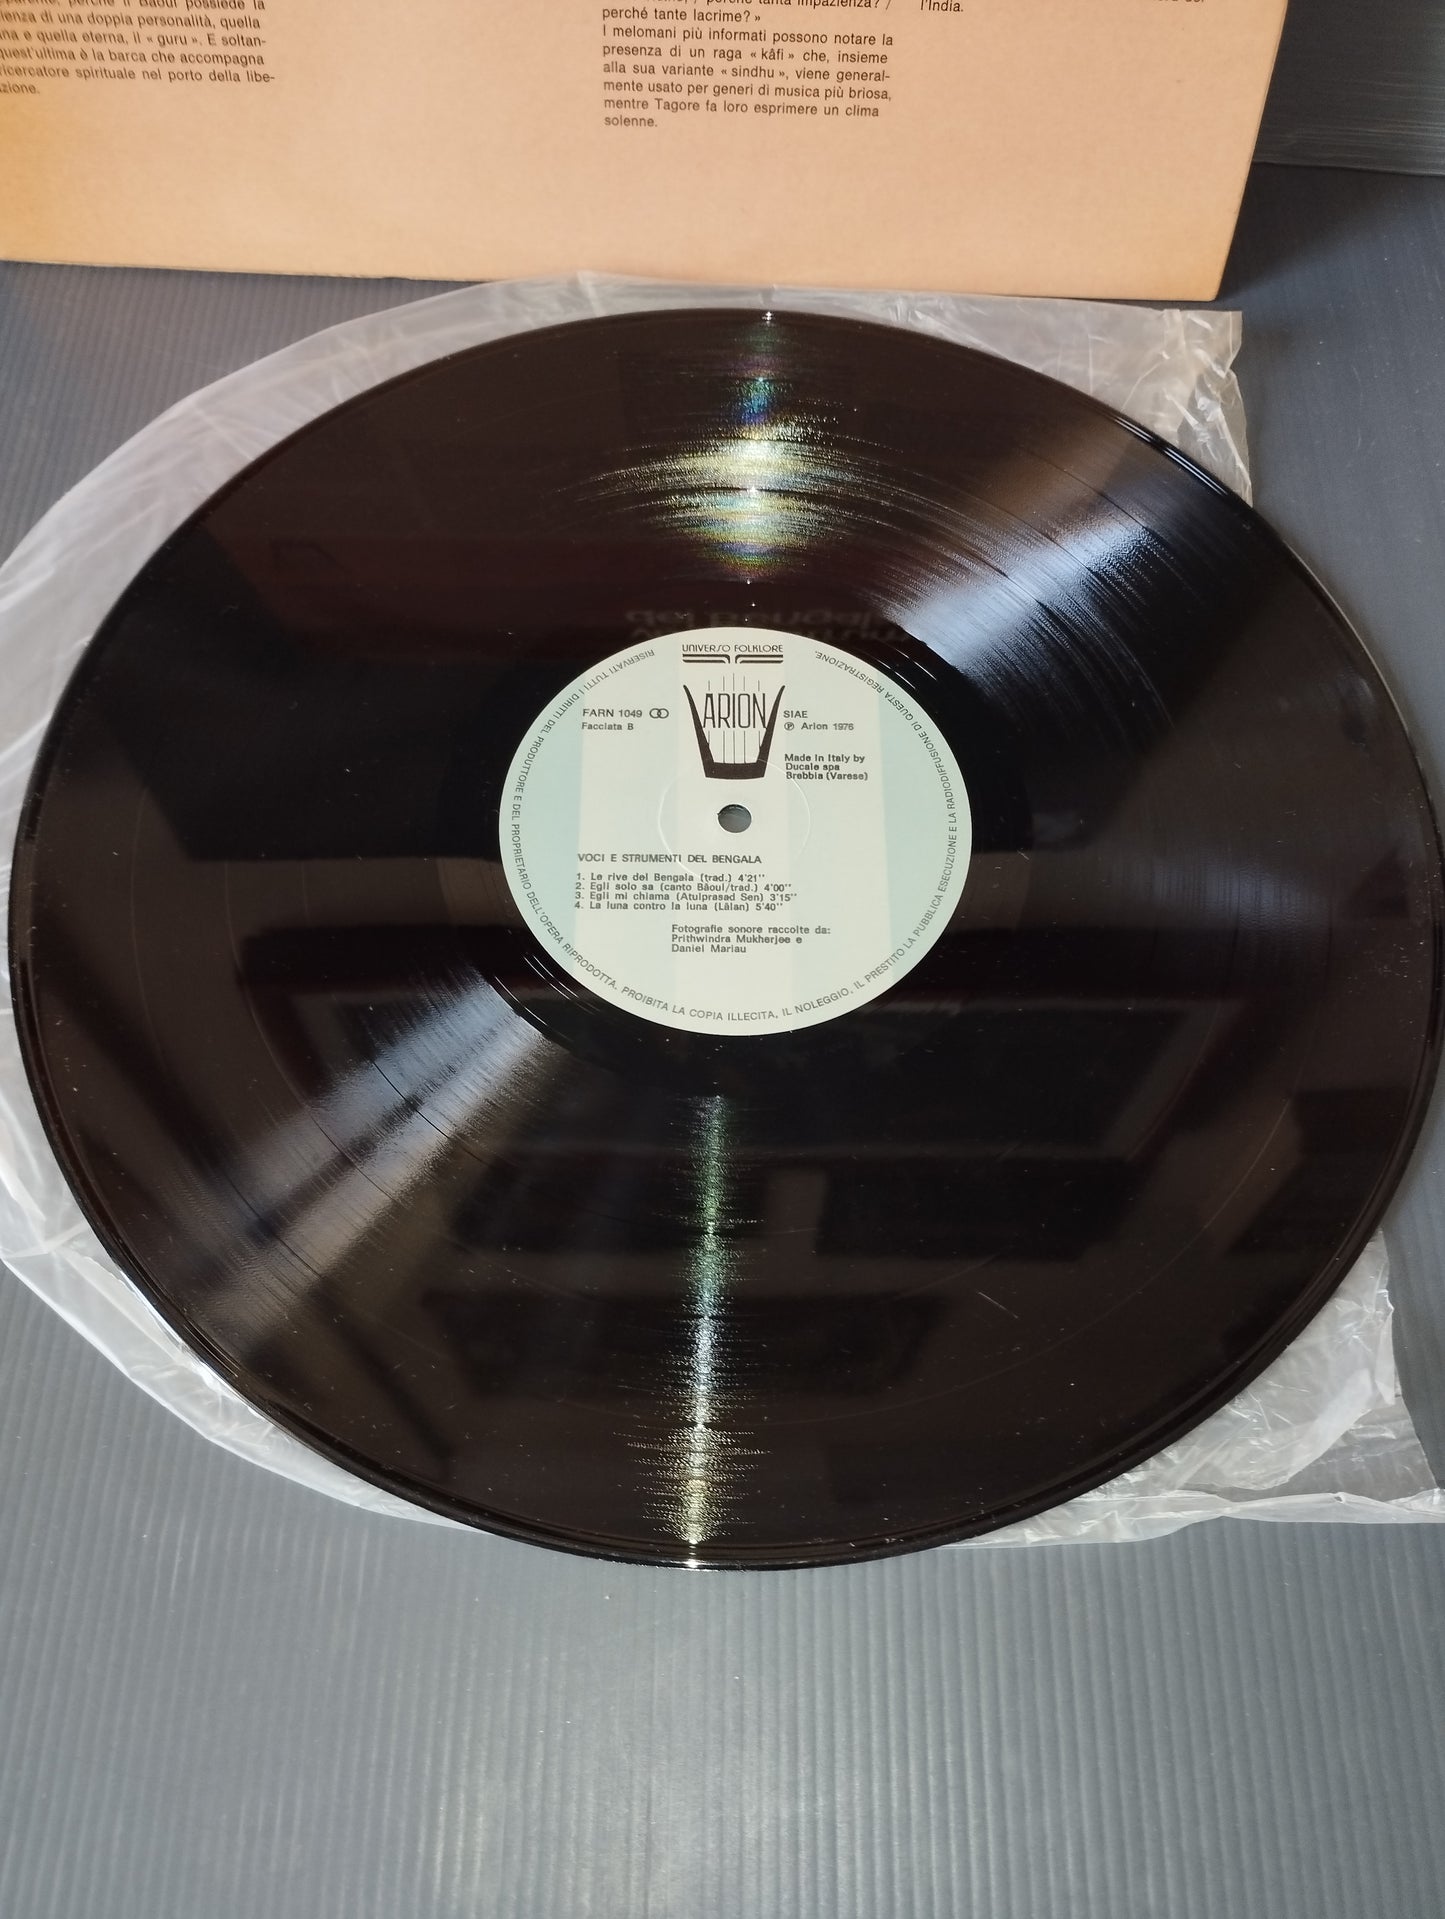 Voci e strumenti del Bengala" LP 33 giri
Edito nel 1976 da Arion Cod.FARN 1049